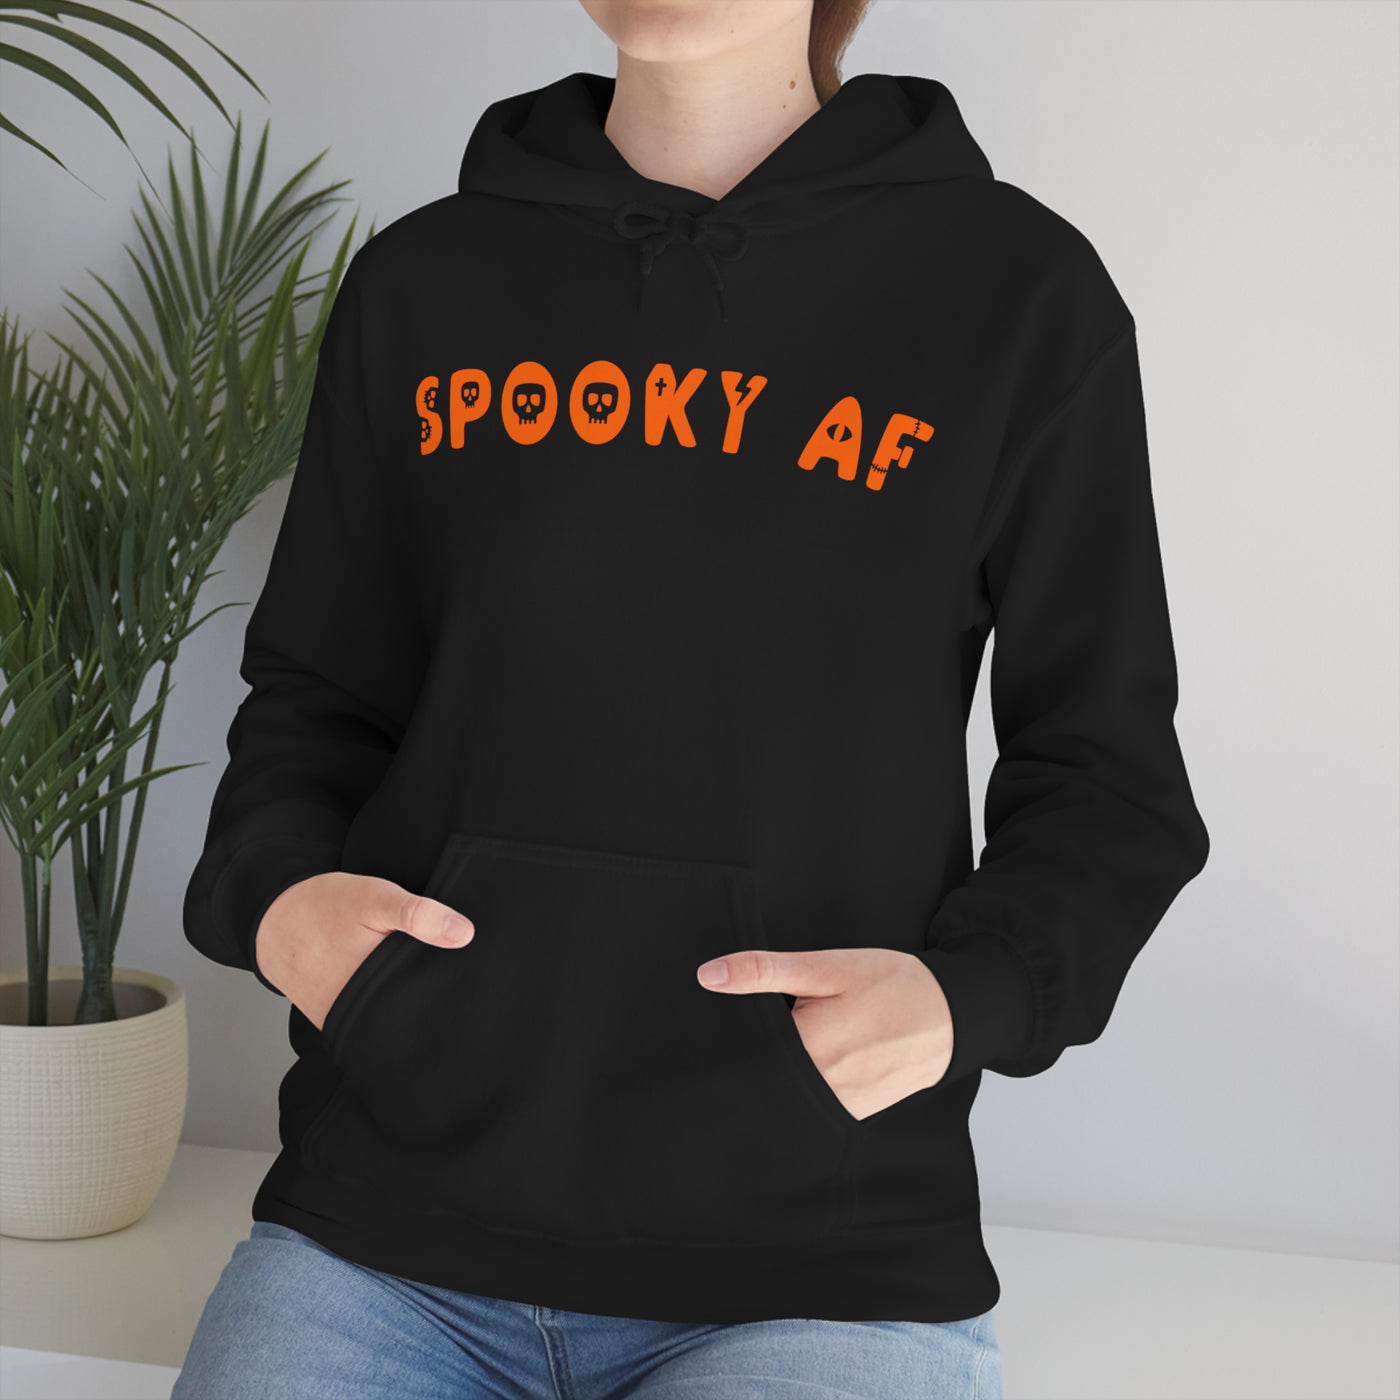 Spooky AF Unisex Hoodie